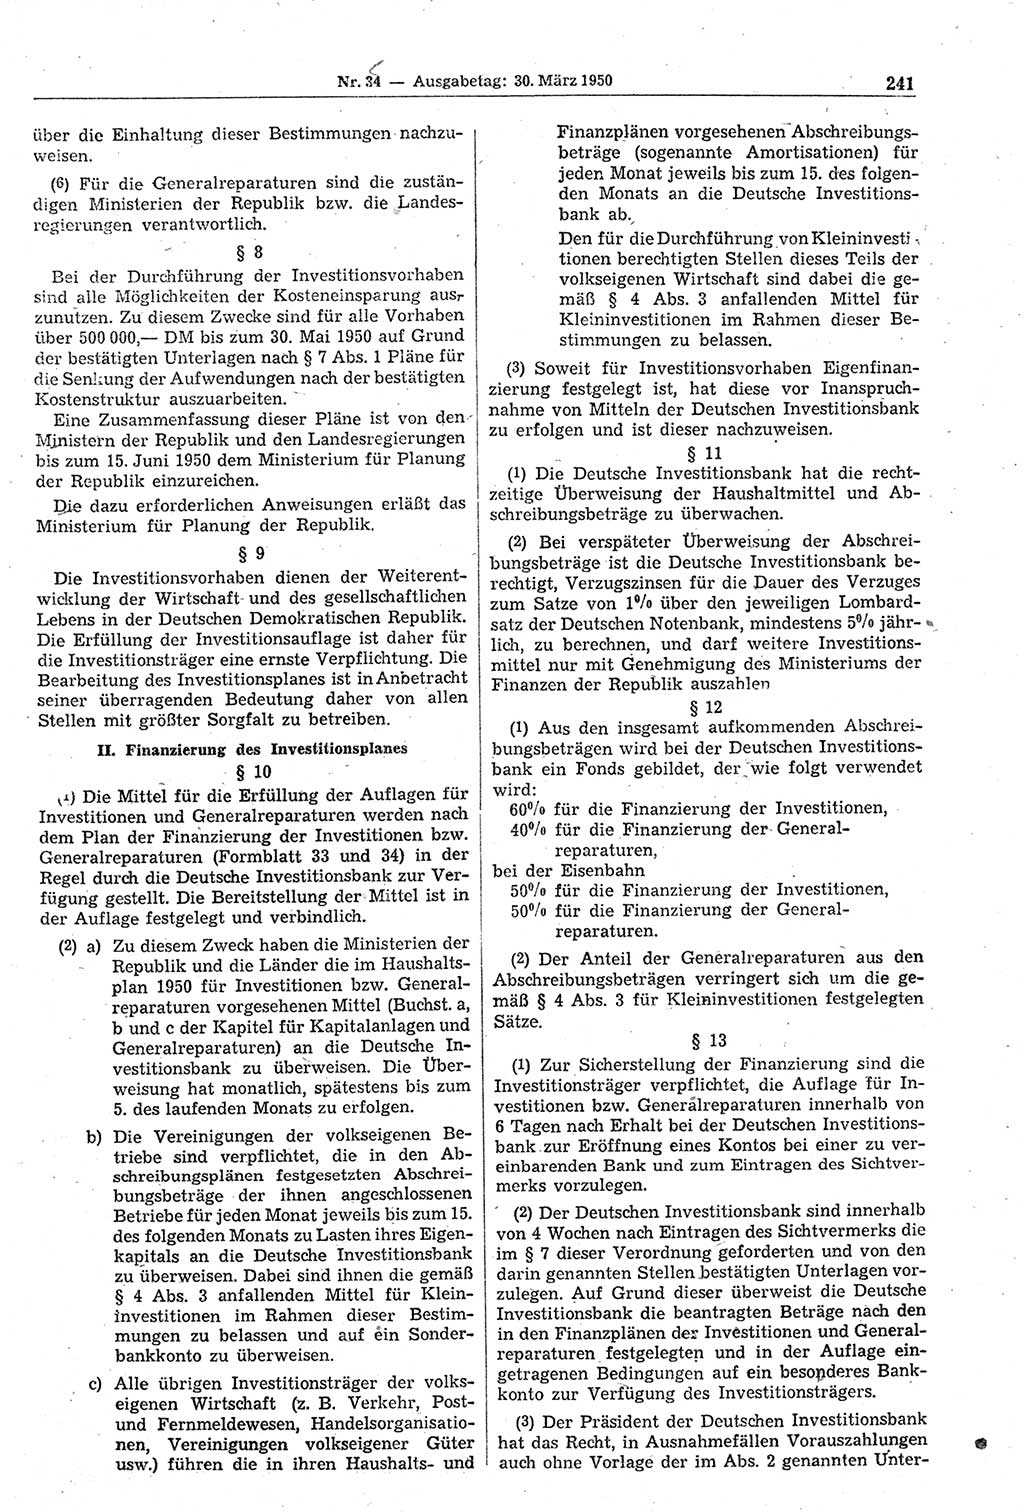 Gesetzblatt (GBl.) der Deutschen Demokratischen Republik (DDR) 1950, Seite 241 (GBl. DDR 1950, S. 241)